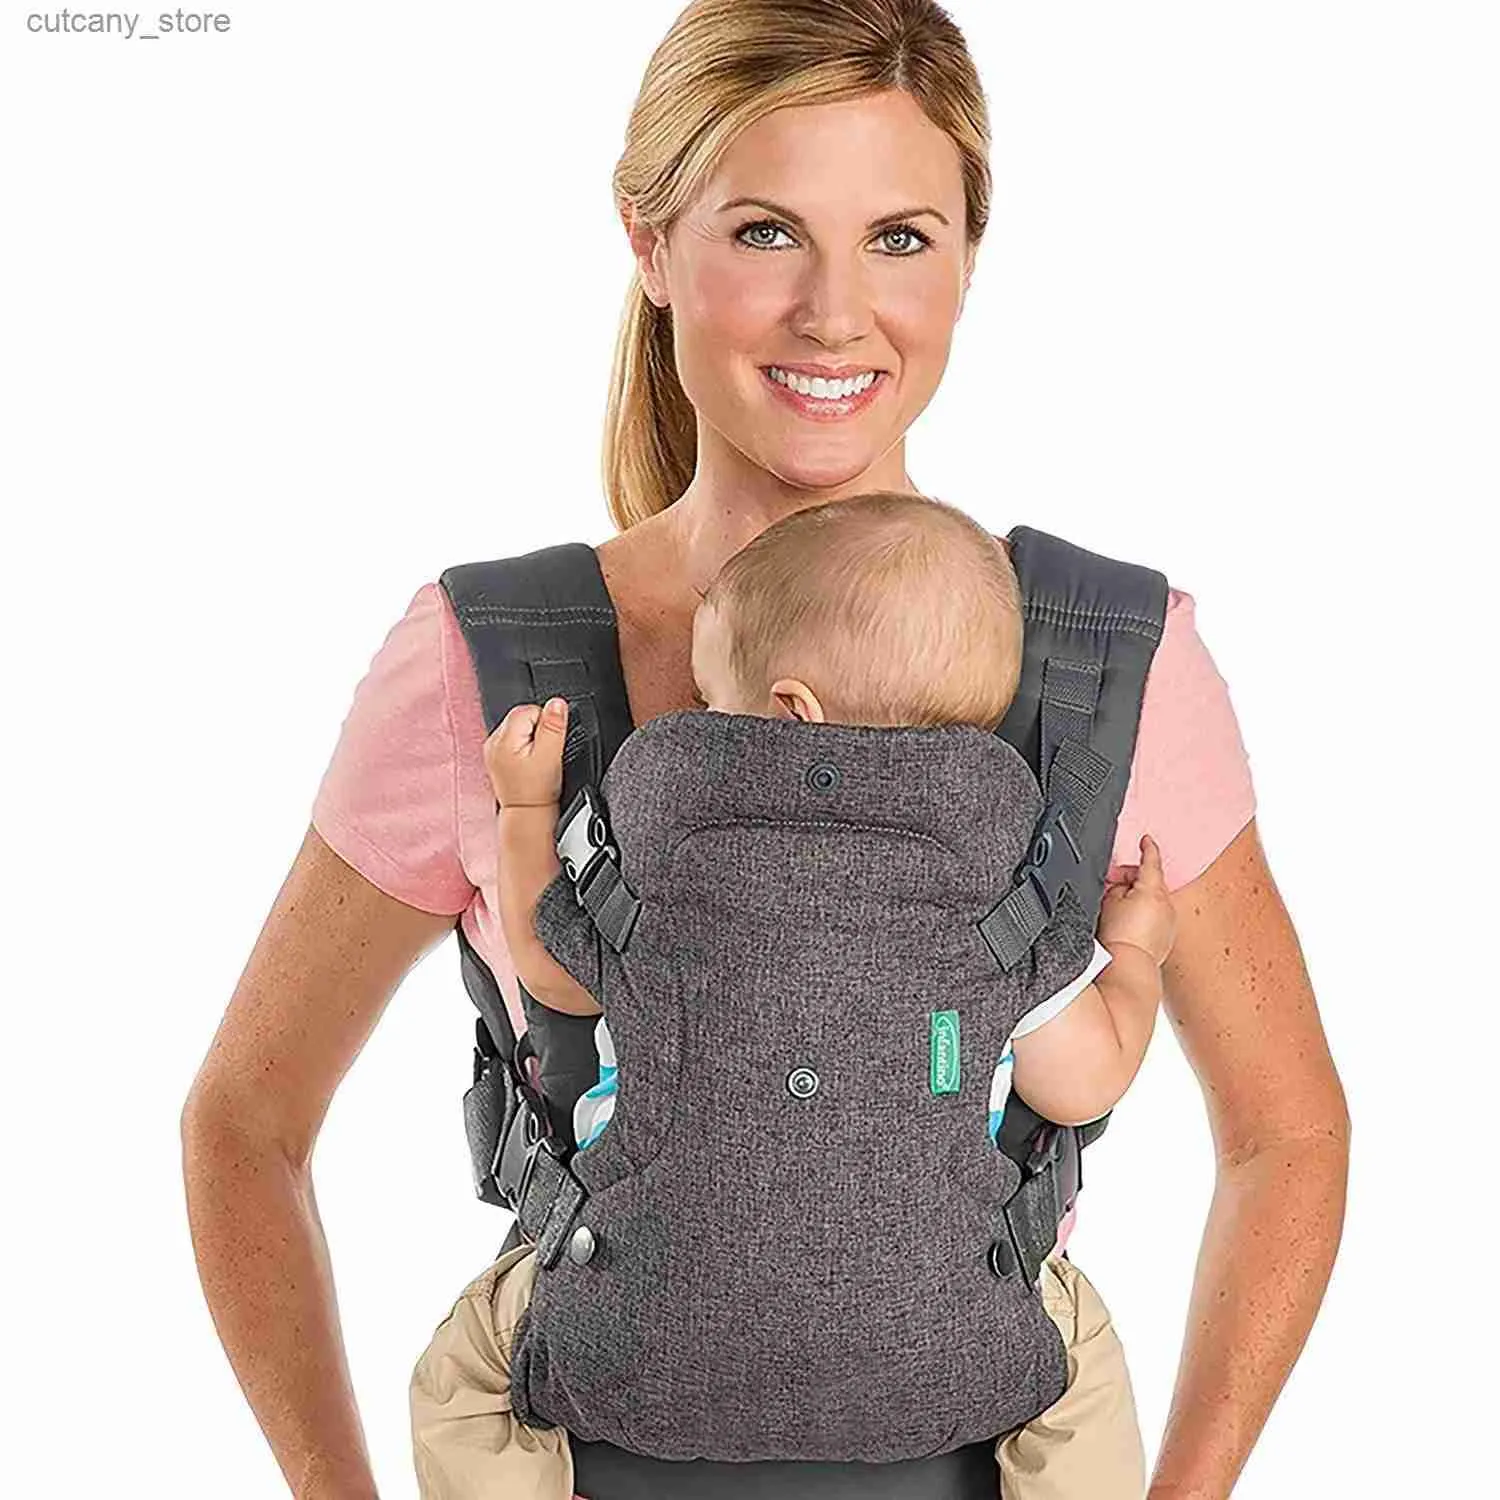 شركات النقل الرحلات على الظهر جميع الفصول حديثي الولادة مواجهة الكنغر المتقدمة 4-في 1 حزام الأطفال حبال الرضيع حزام الخصر الحزام معدات L240318